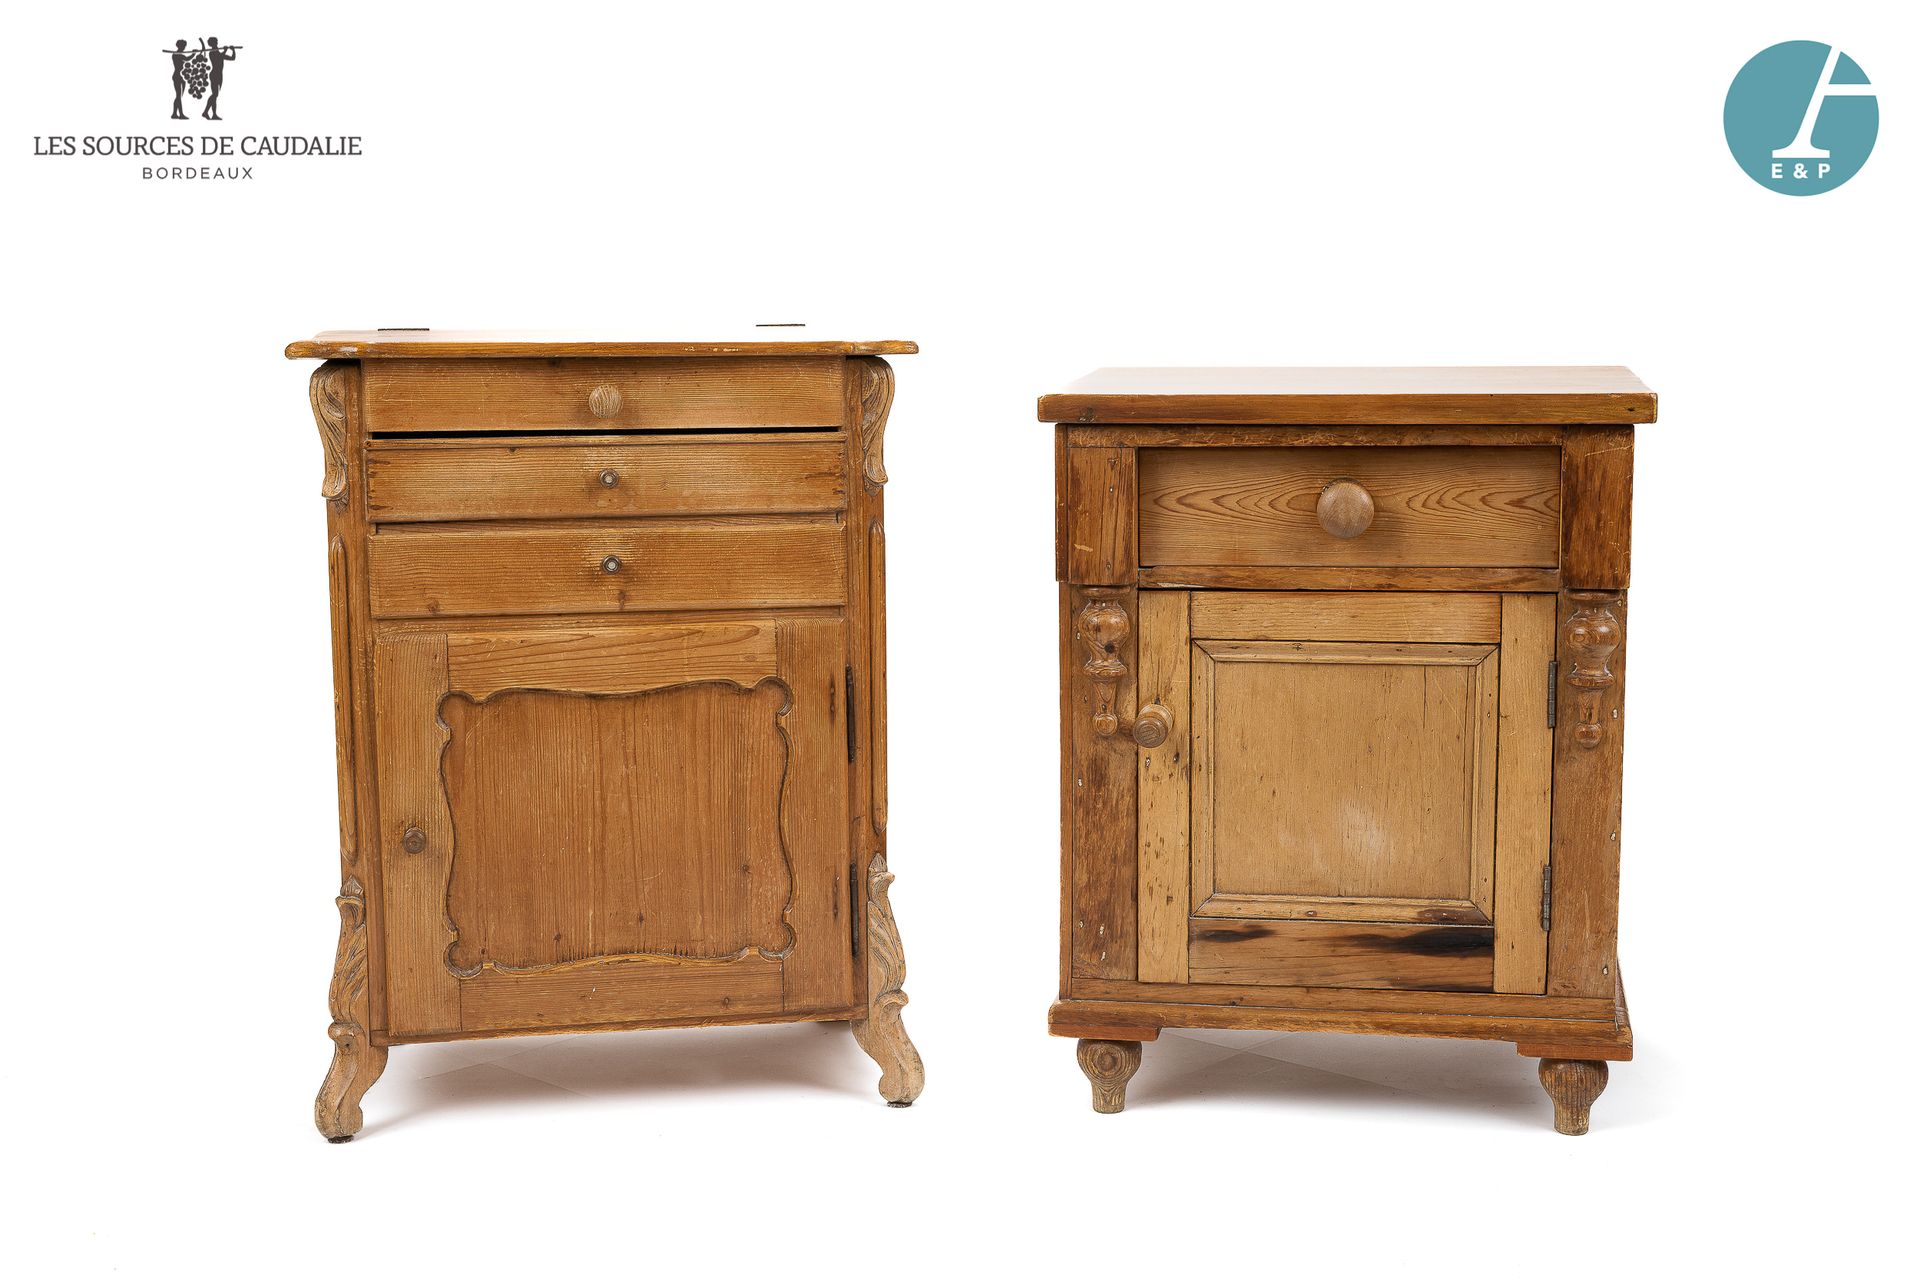 Null 从4号房间 "Les Douelles "出发

一套两件天然木质的家具，一件开口有一个储物柜，一个抽屉和一个门，另一件开口有一个抽屉和一个门。

使&hellip;